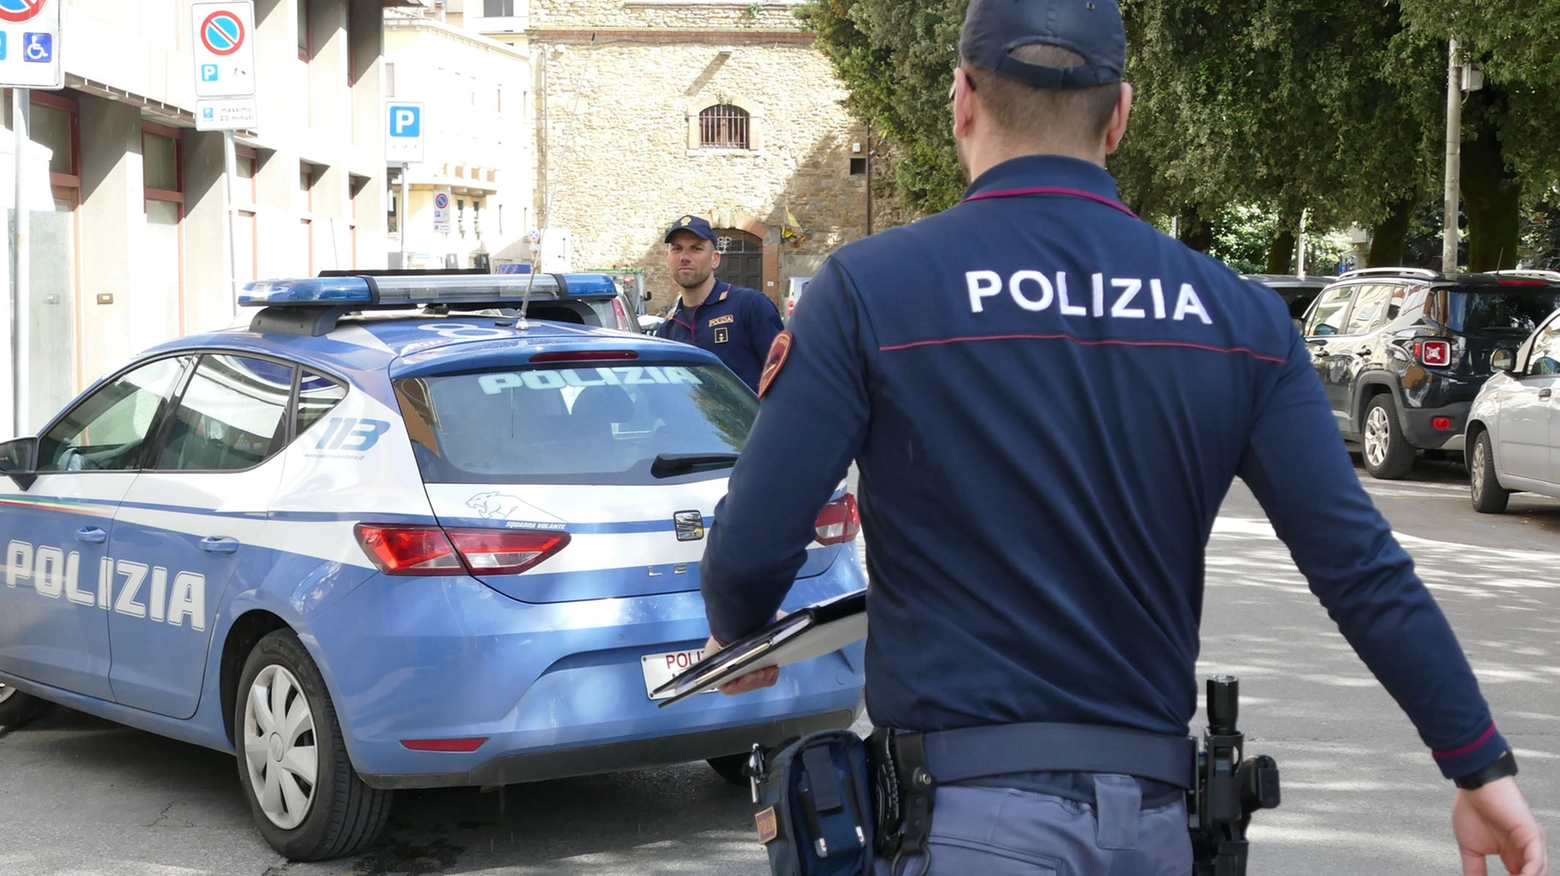 Il fatto è avvenuto il 4 luglio a Palermo, quando fu colpito un 20enne in una rissa. La vittima è morta dopo 12 giorni di agonia. Nella città toscana la polizia ha interrotto la fuga del ricercato da Agrigento verso la Francia.